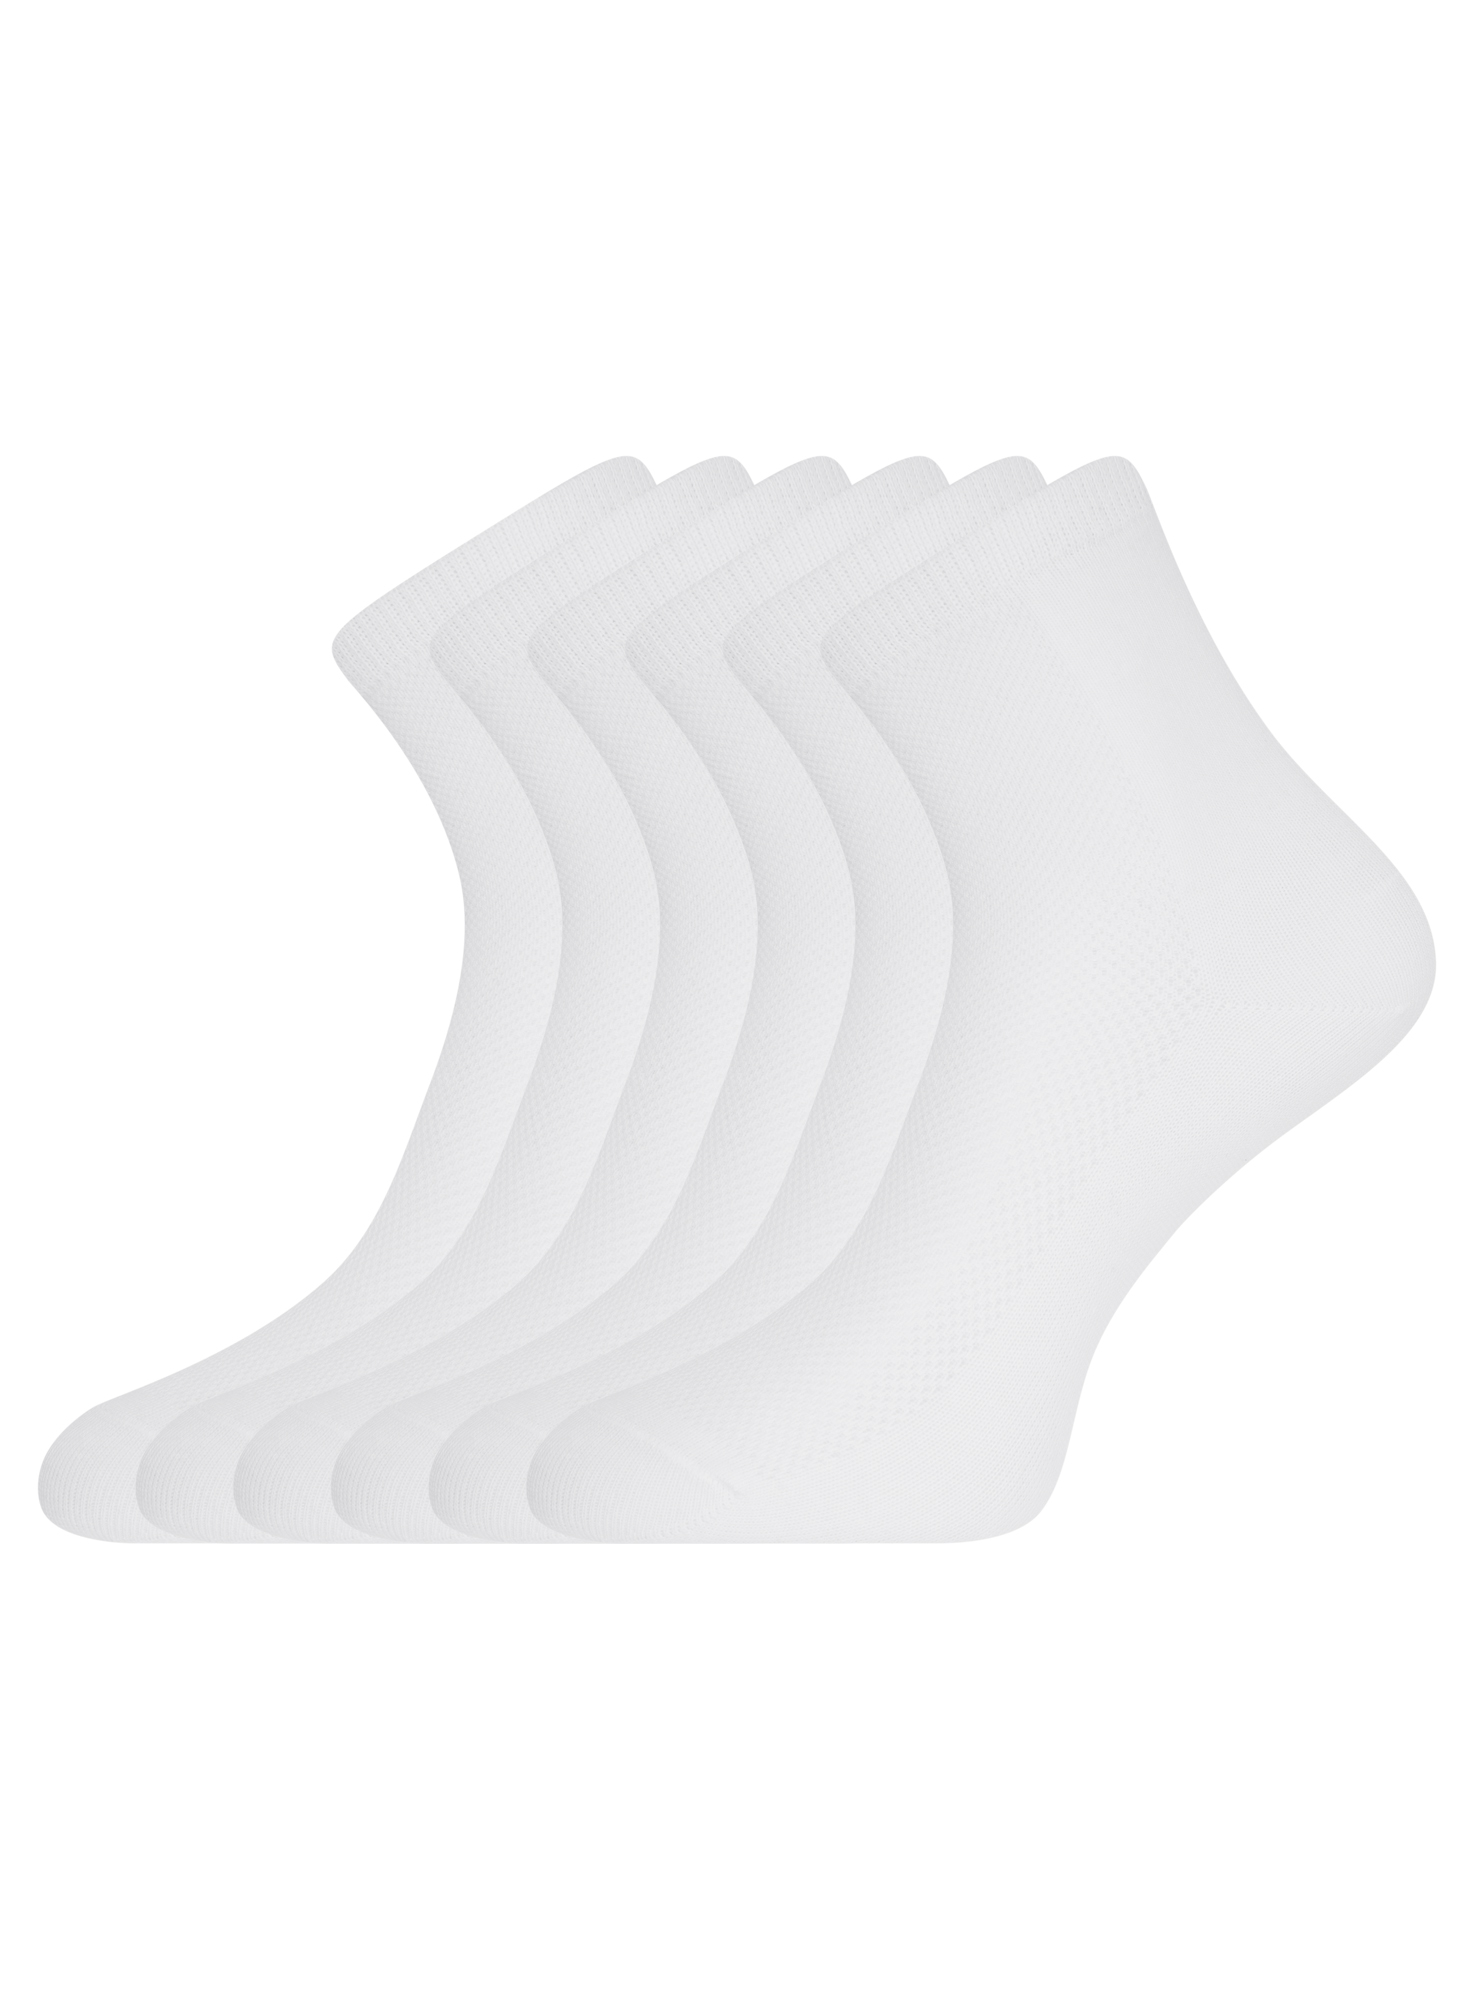 Комплект носков женских oodji 57102809T6 белых 35-37